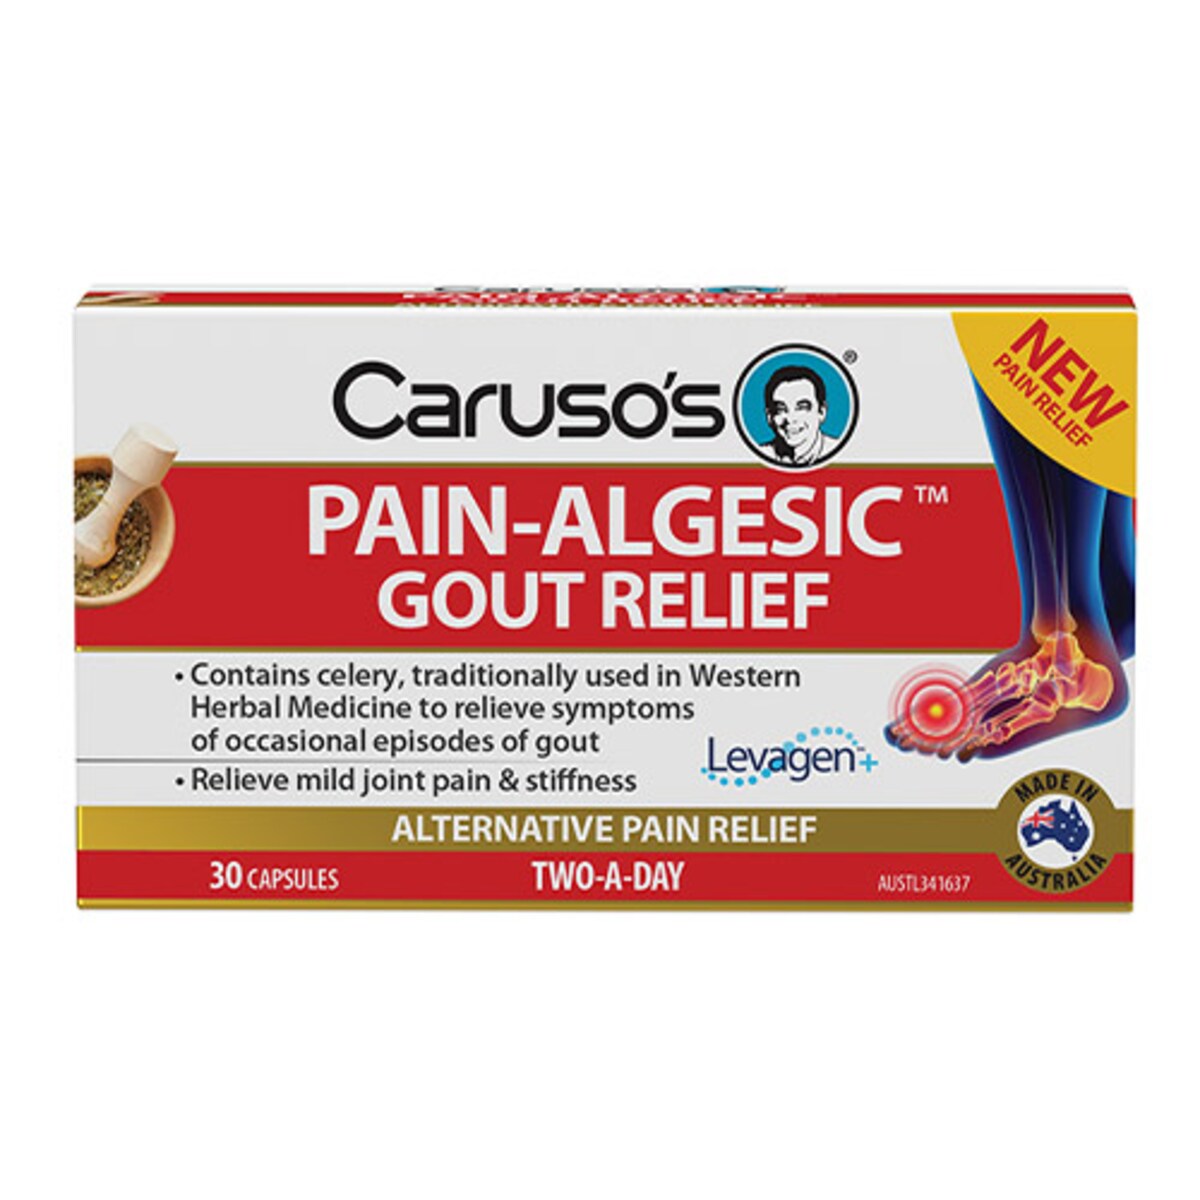 Carusos Pain-Algesic Gout Relief 30 Capsules